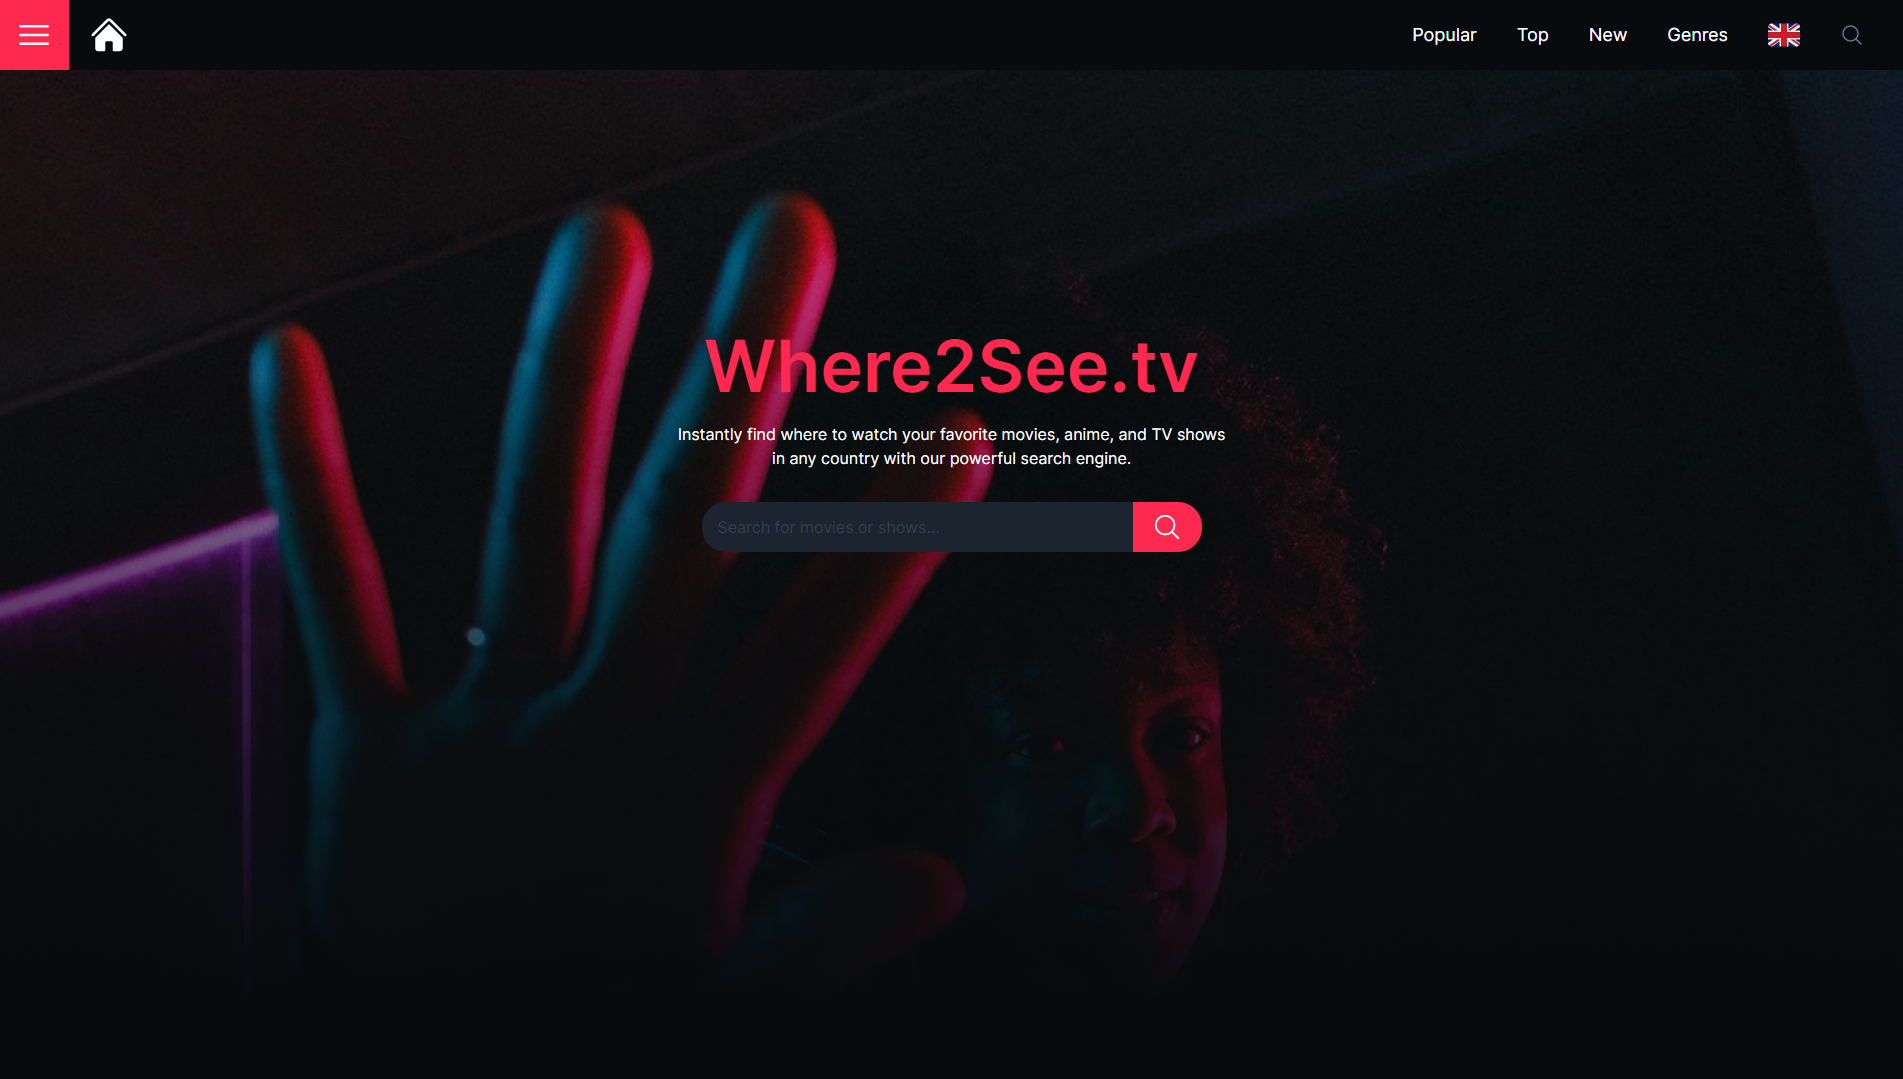 Ontdek waar je favoriete TV-series en films te vinden zijn met Where2see.tv